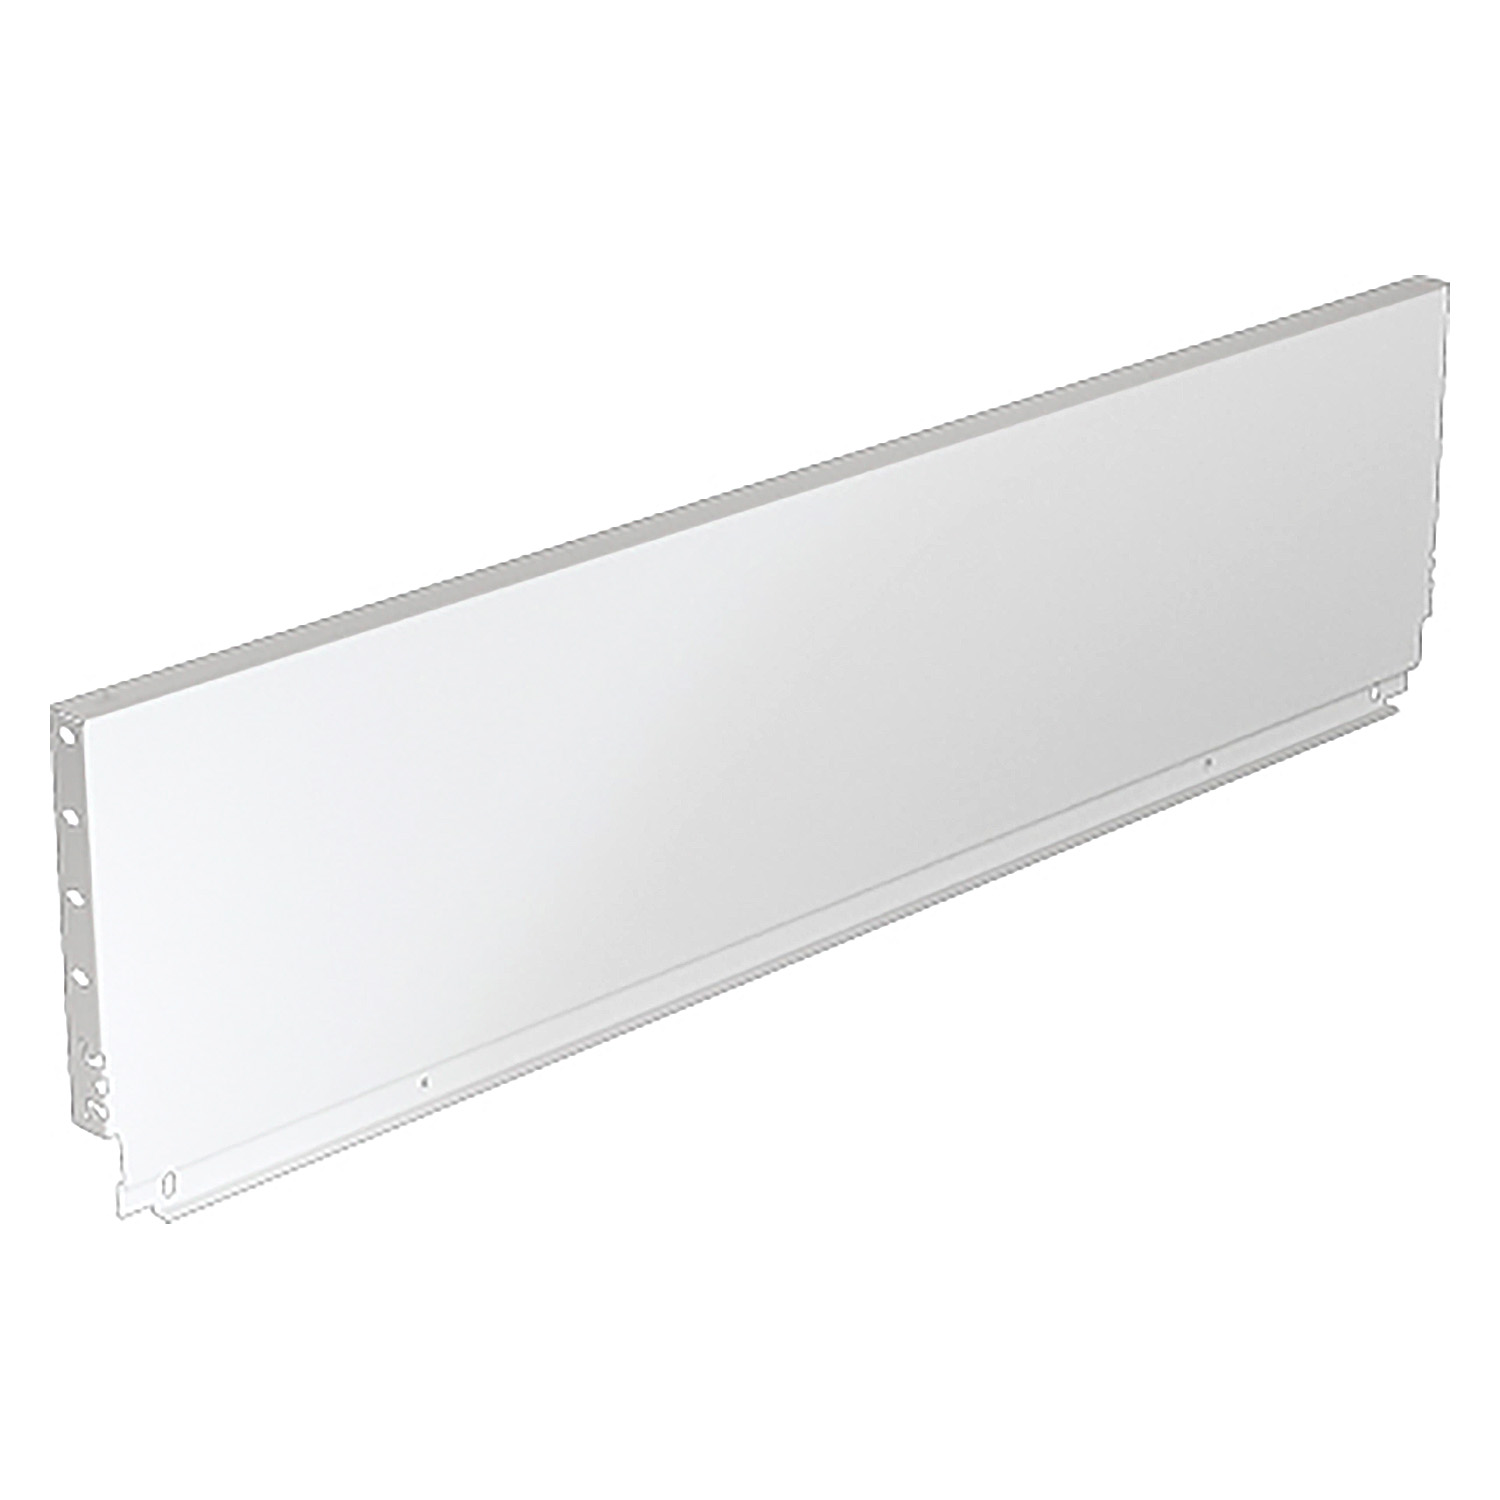 HETTICH Stahlrückwand ArciTech, 218 x 275 mm, weiß, 9121609